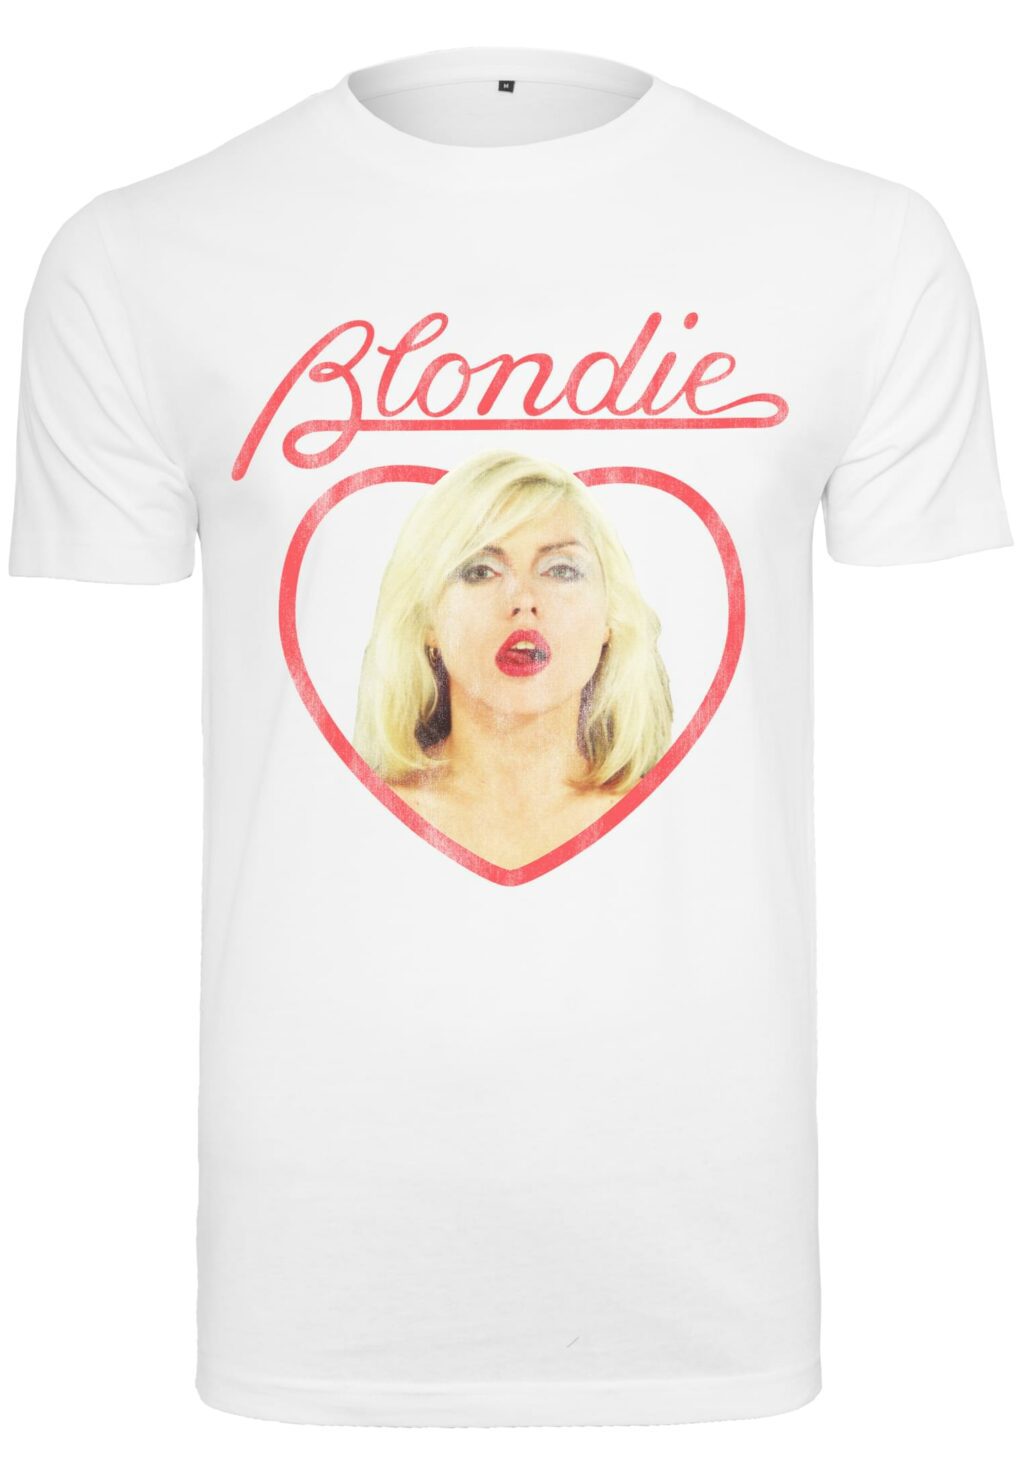 Blondie Heart of Glass Tee white MC867